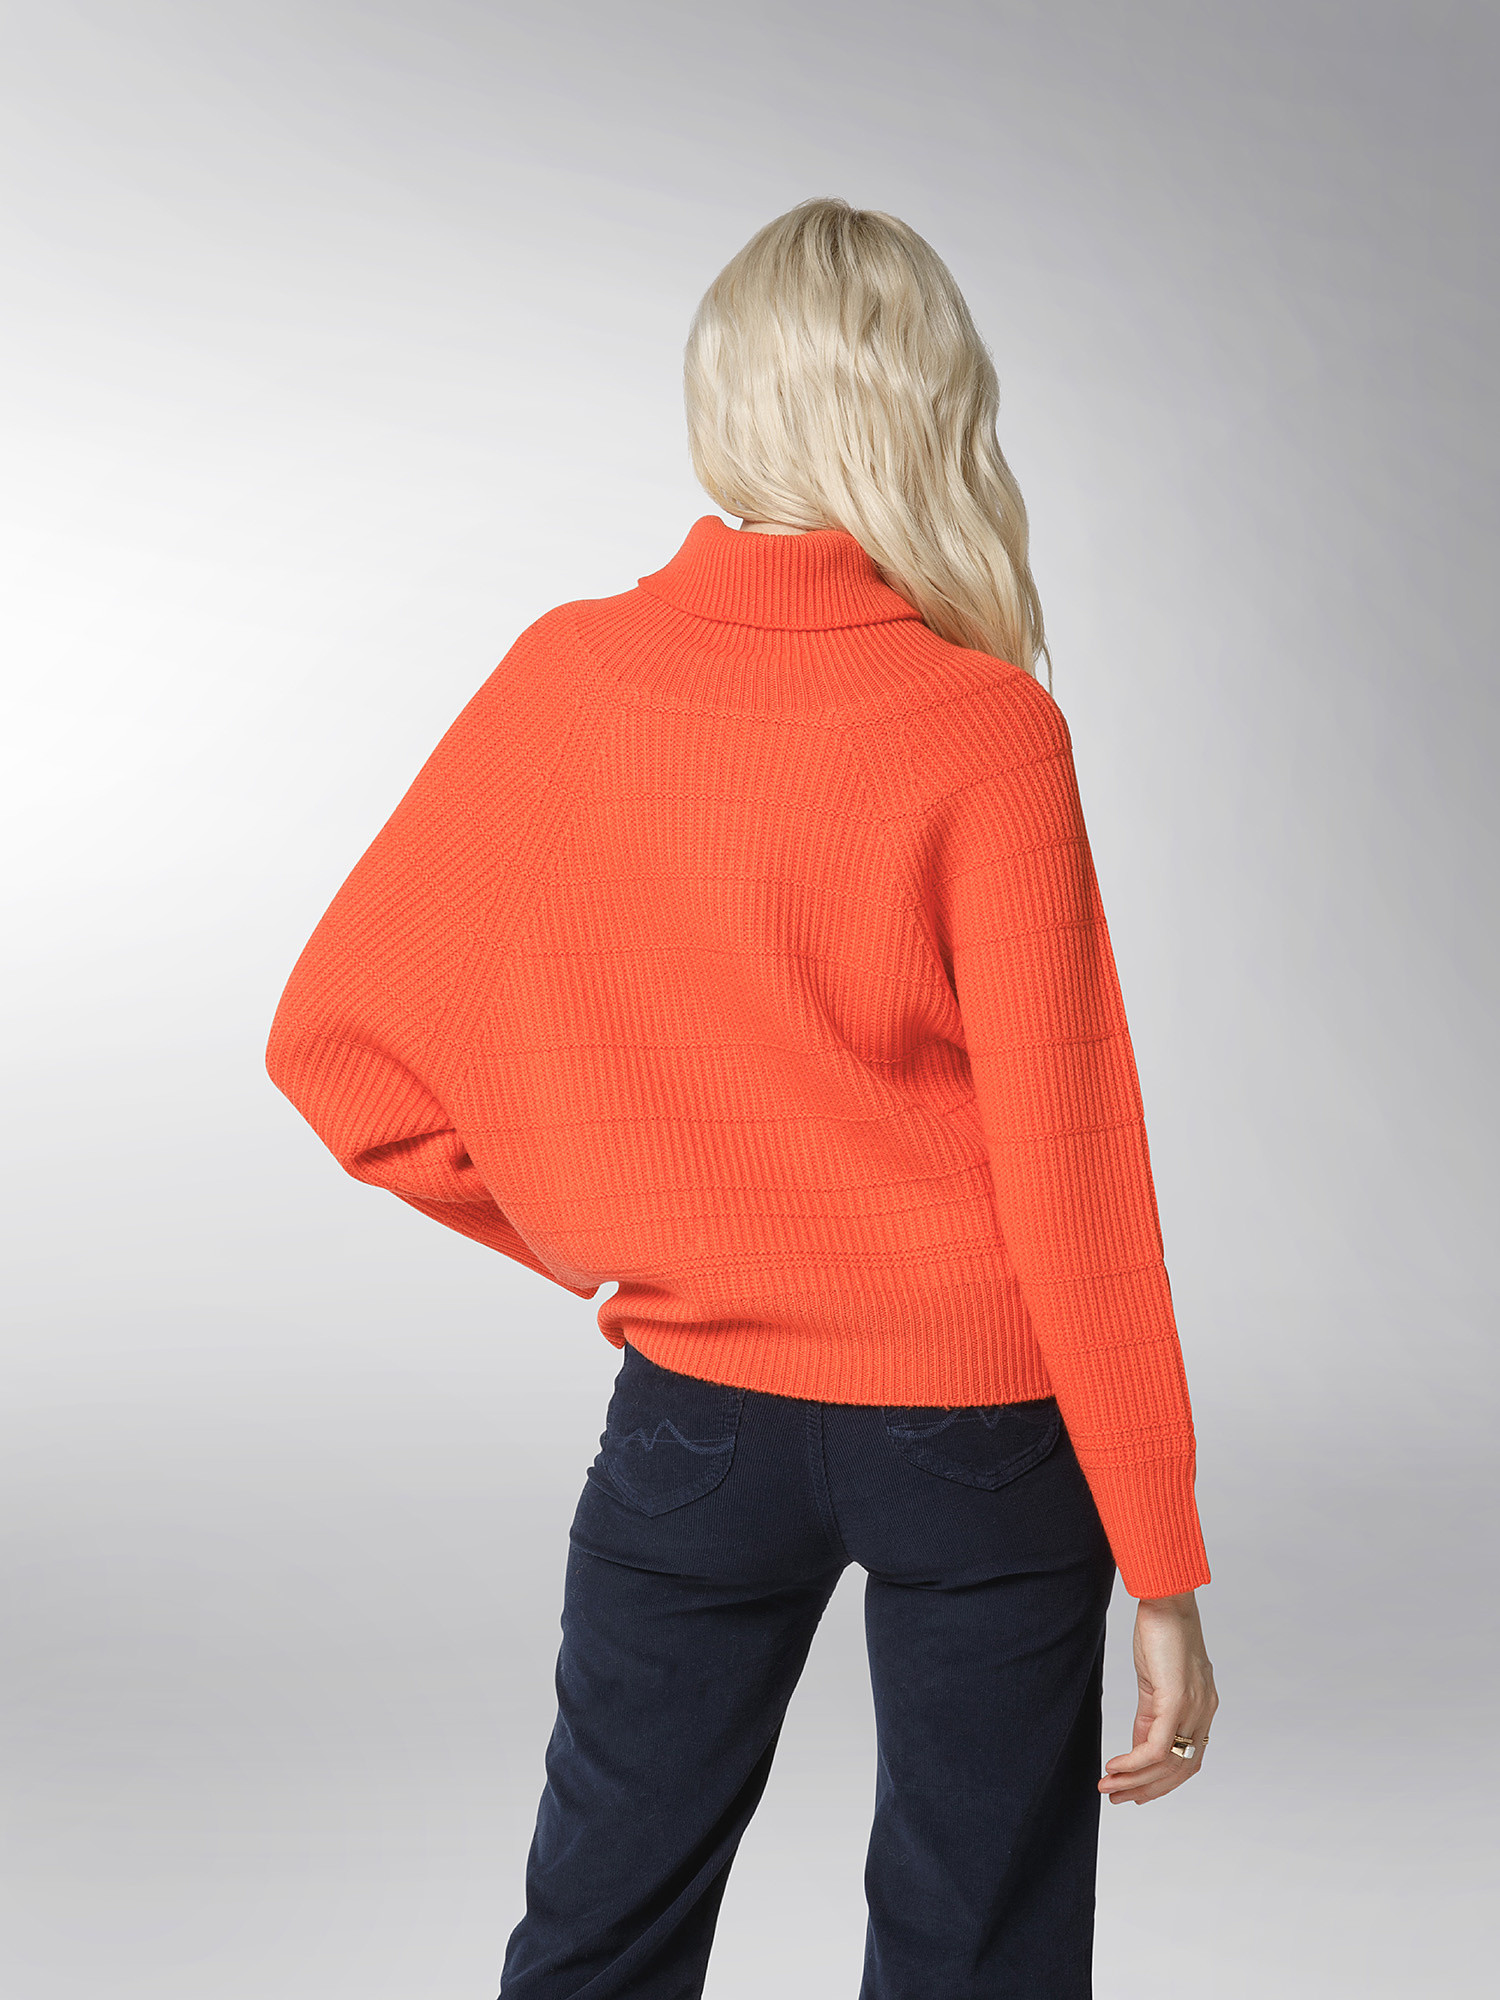 K Collection - Turtleneck pullover, Orange, large image number 5